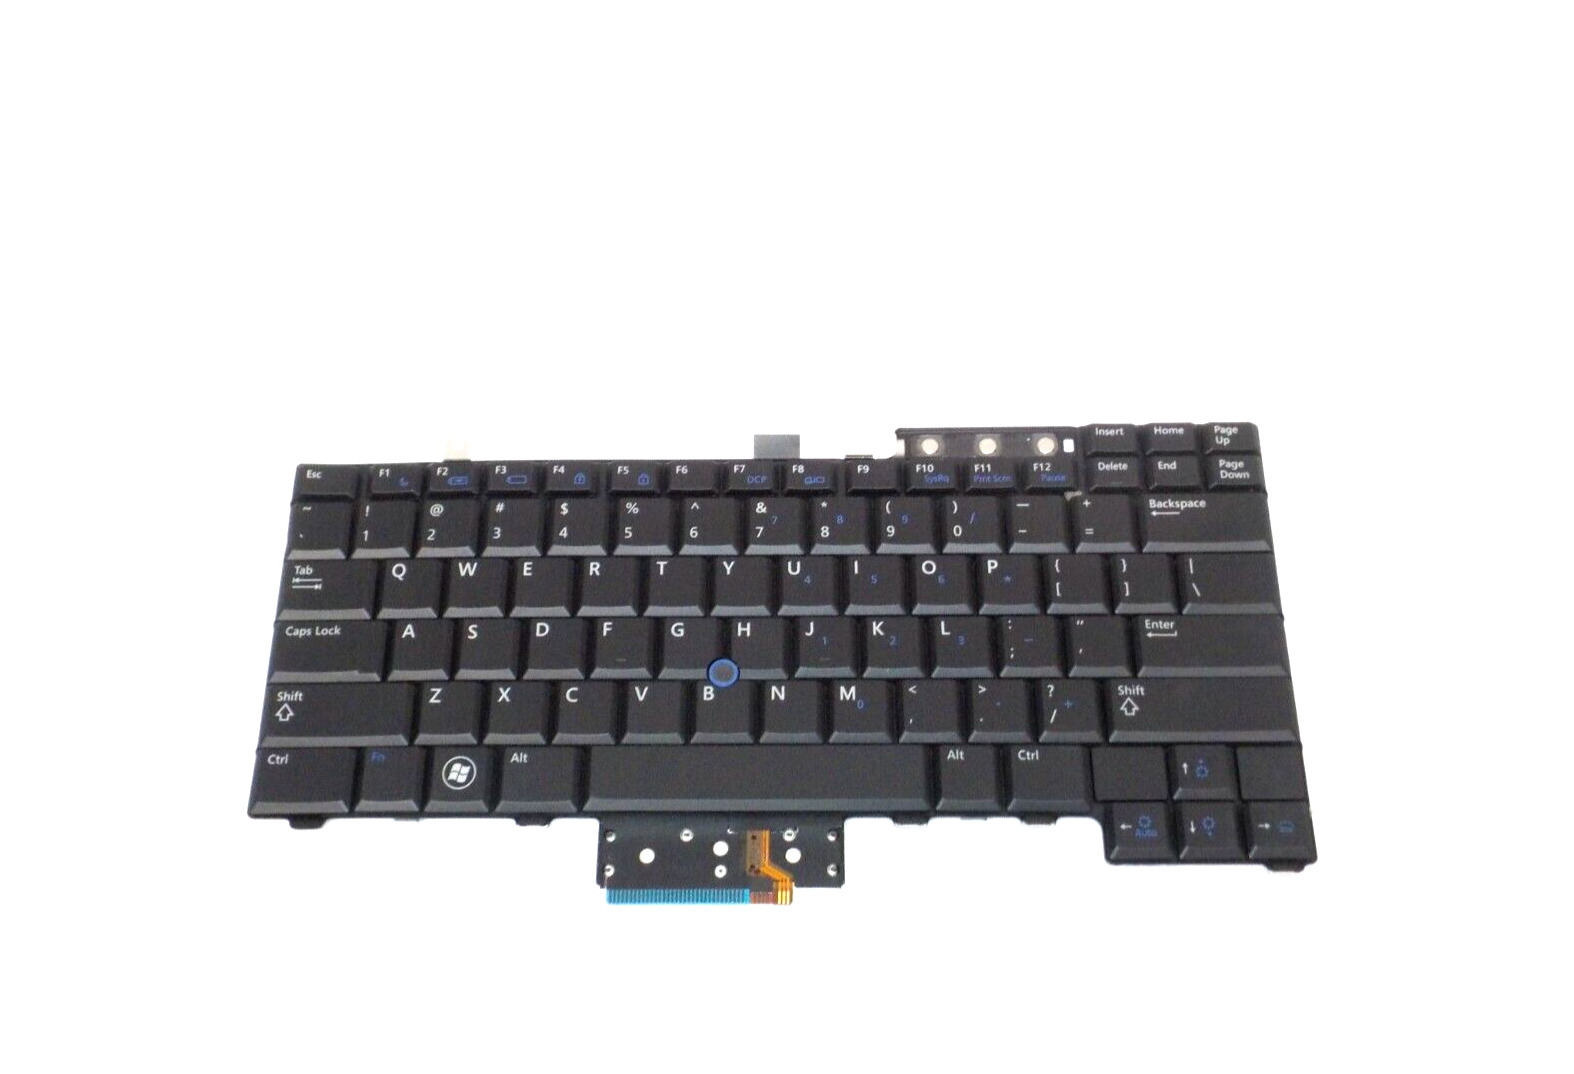 New Dell OEM Latitude E6400 XFR Backlit Laptop Keyboard -AMA01 1RNWM 01RNWM